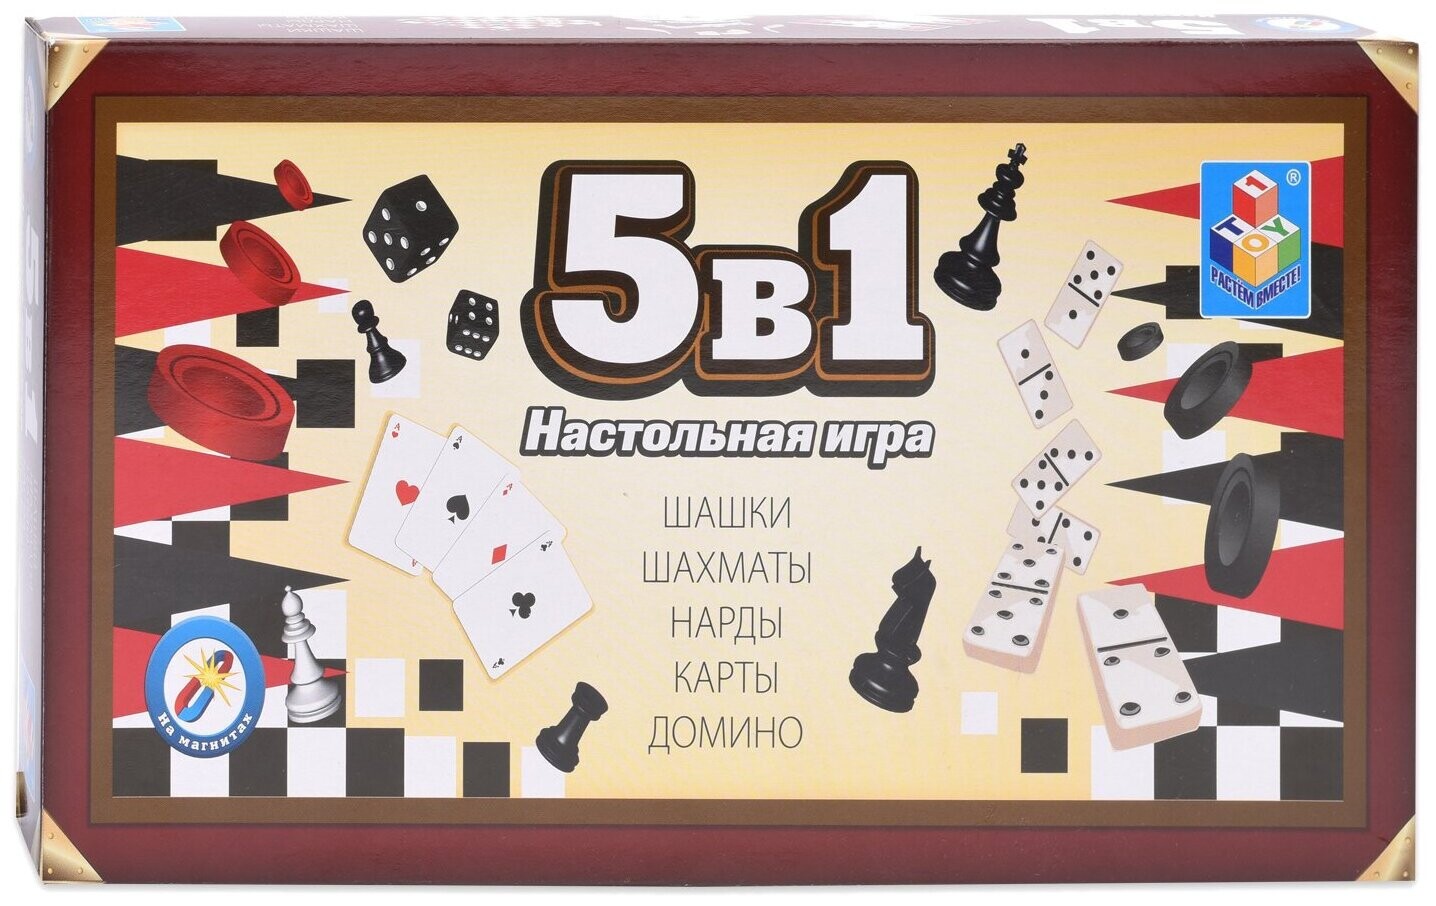 Игра магнитная 5 в 1 шашки шахматы нарды карты Домино 1toy, т12060. Набор настольный игр "5в1":шашки и шахматы, нарды, карты Домино. Игра магнитная 5 в 1 «шашки, шахматы, нарды, карты, Домино»,. Карты нарды Домино.